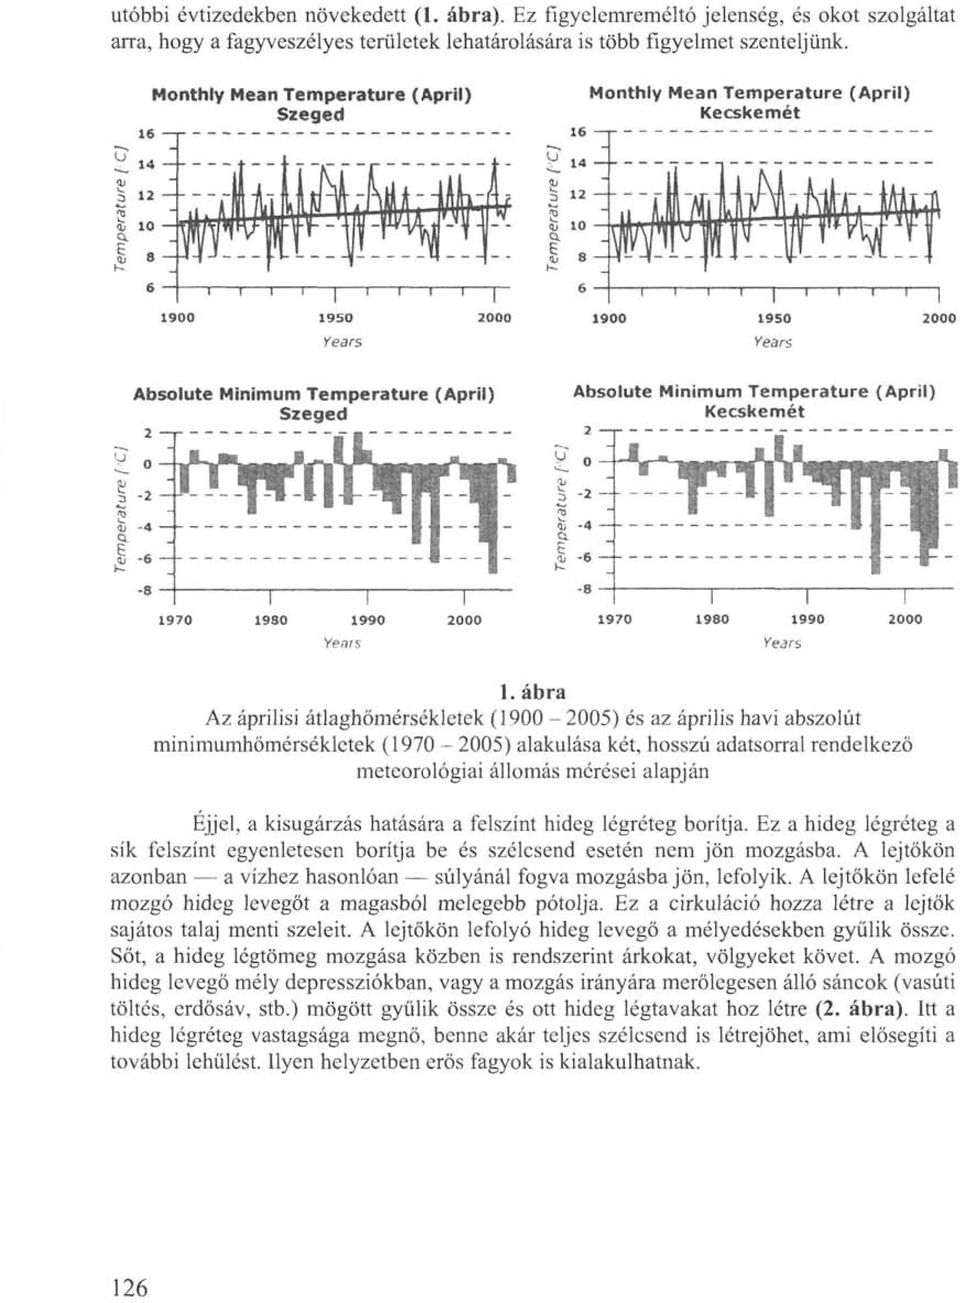 ábra Az áprilisi átlaghőmérsékletek (1900-2005) és az április havi abszolút minimumhömérsékletek (1970-2005) alakulása két, hosszú adatsorral rendelkező meteorológiai állomás mérései alapján Éjjel, a